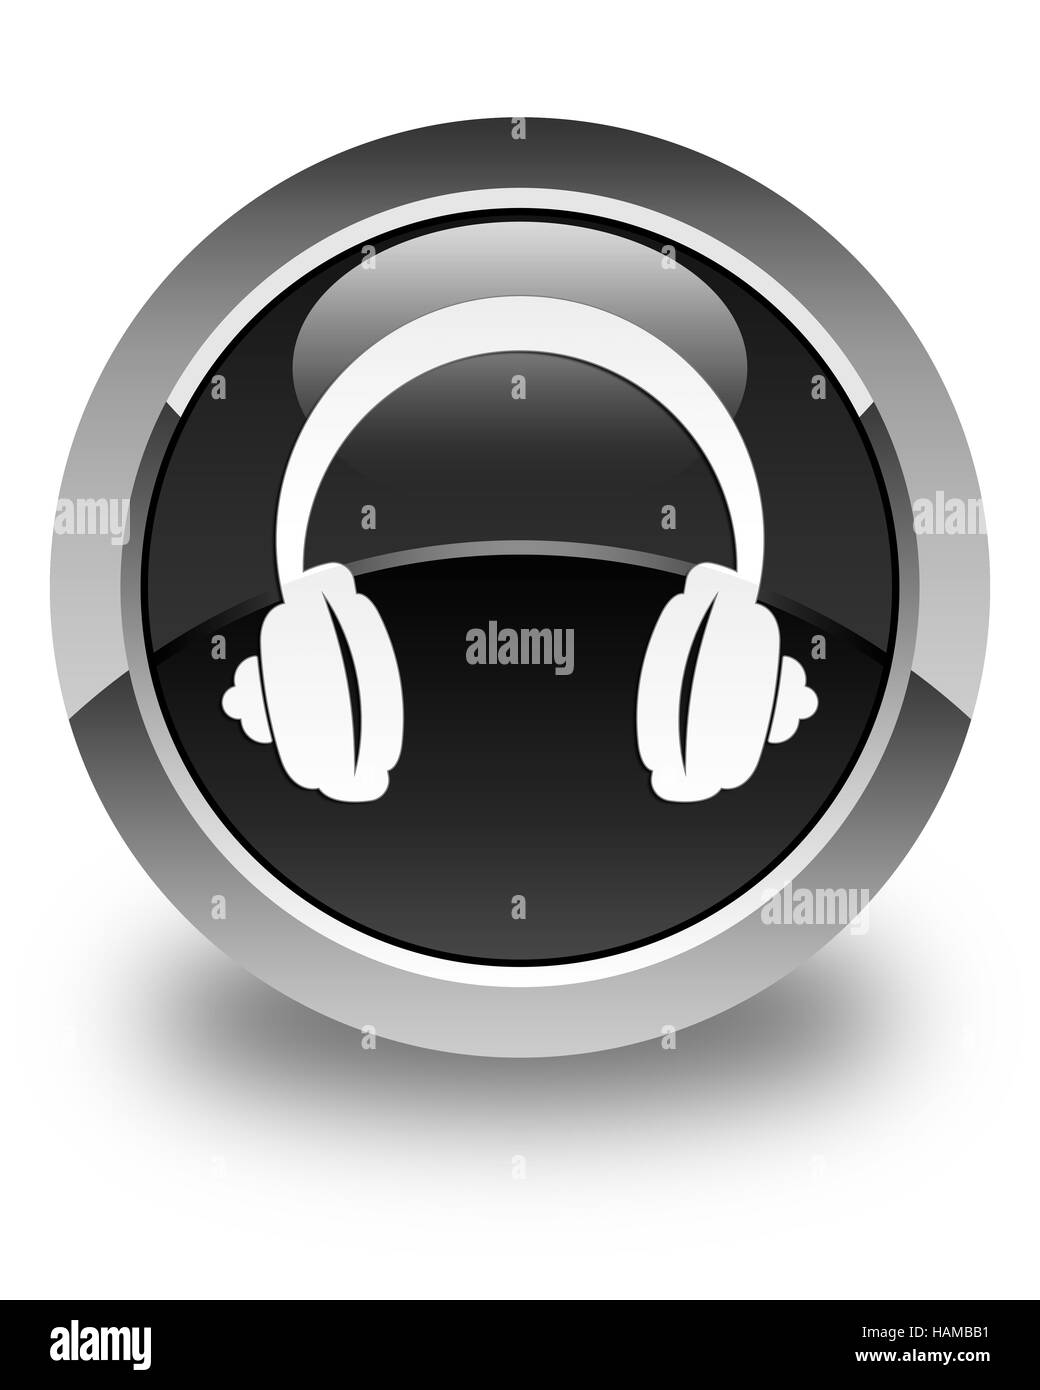 Música sonido audio cascos auriculares - Iconos Musica y Multimedia, cascos  de musica 